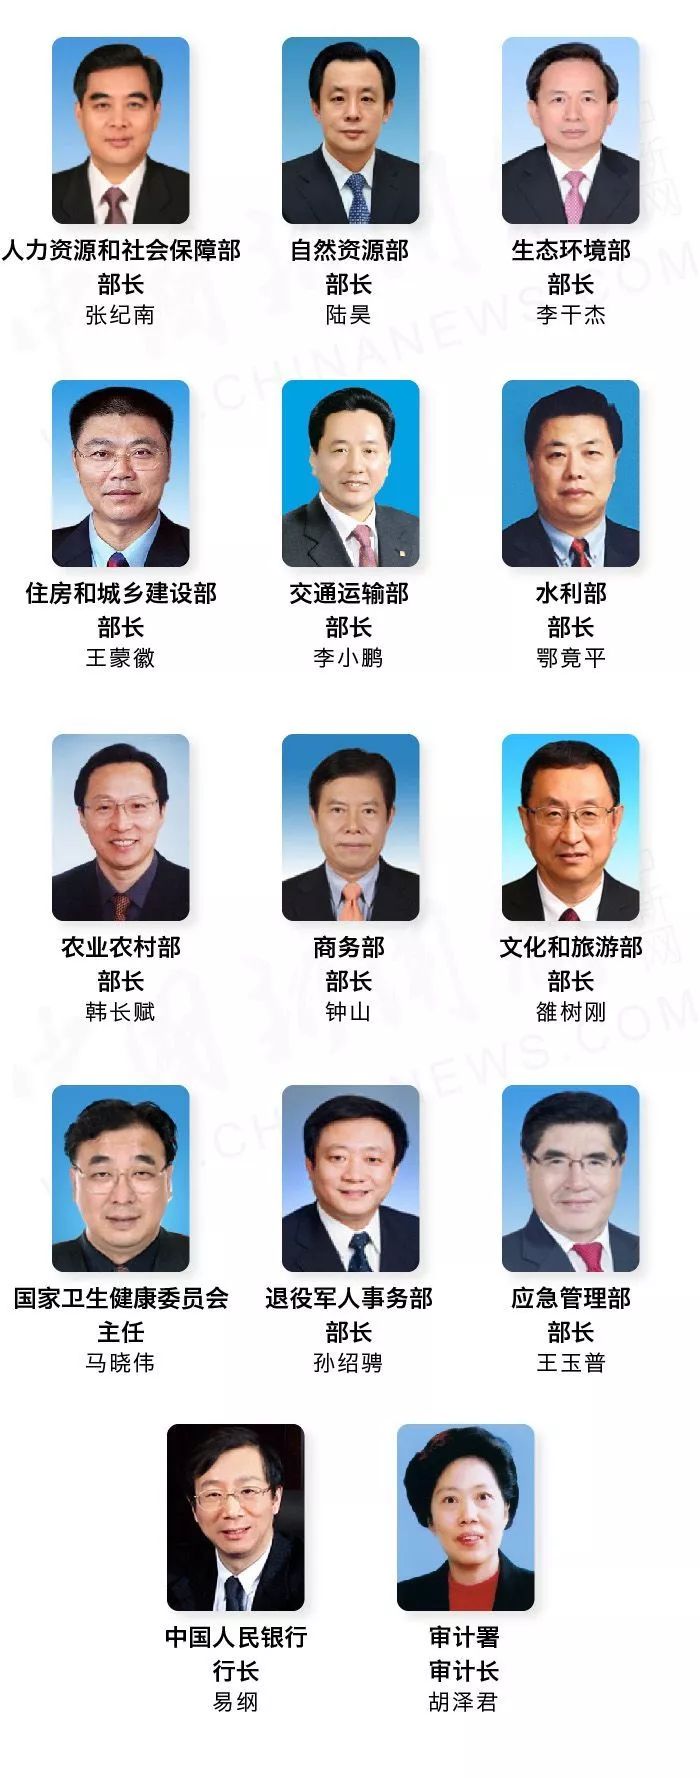 最新一届中国领导班子阵容!